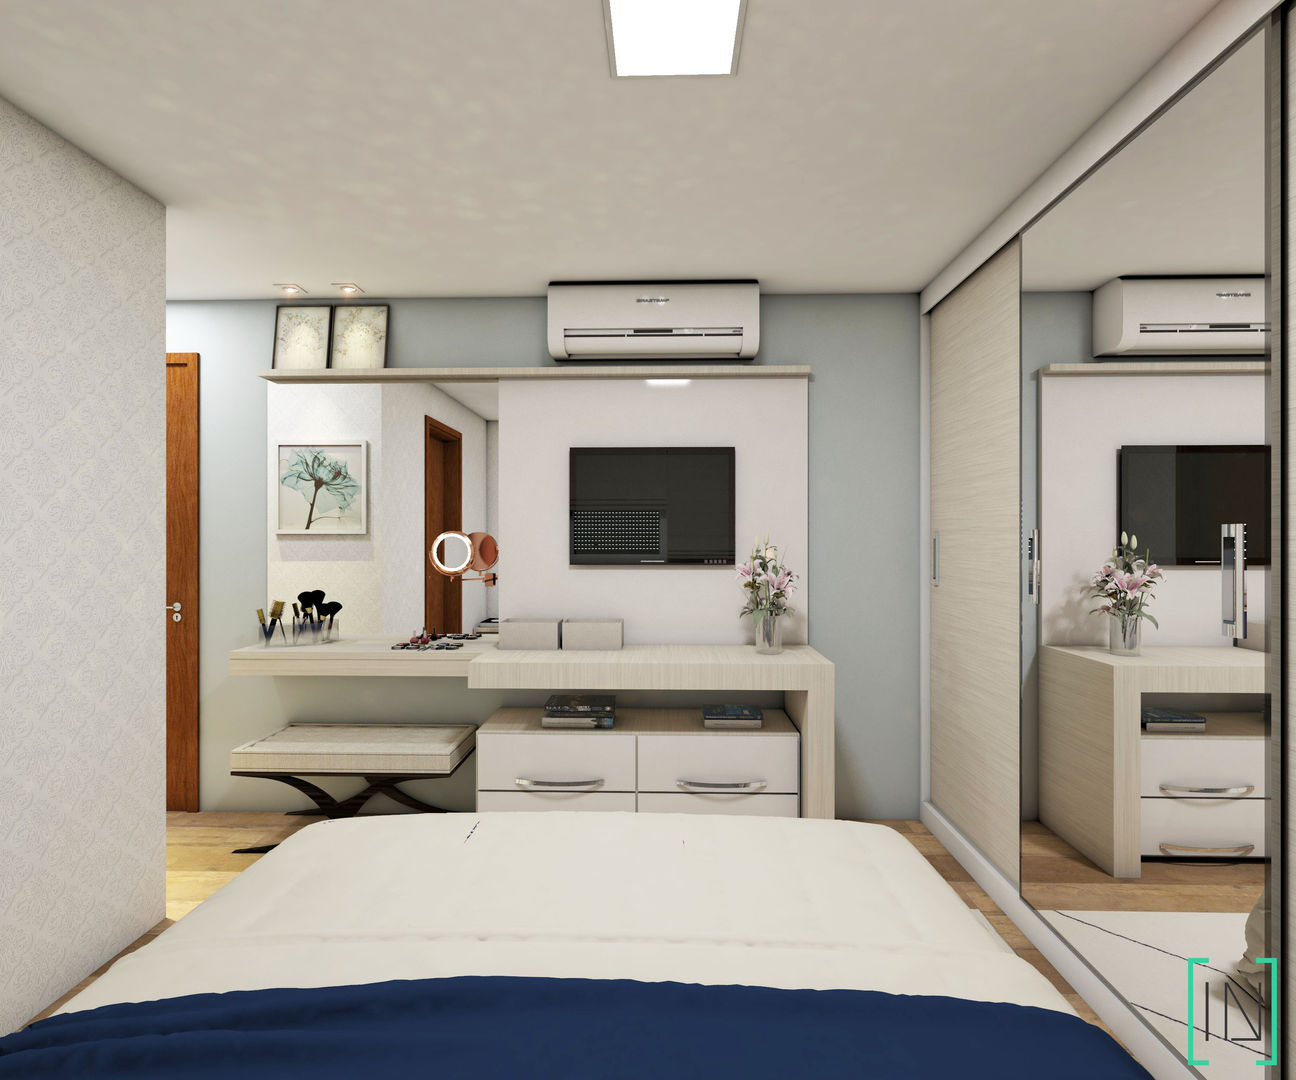 Apartamento de Casal, INOVE ARQUITETURA INOVE ARQUITETURA Dormitorios modernos